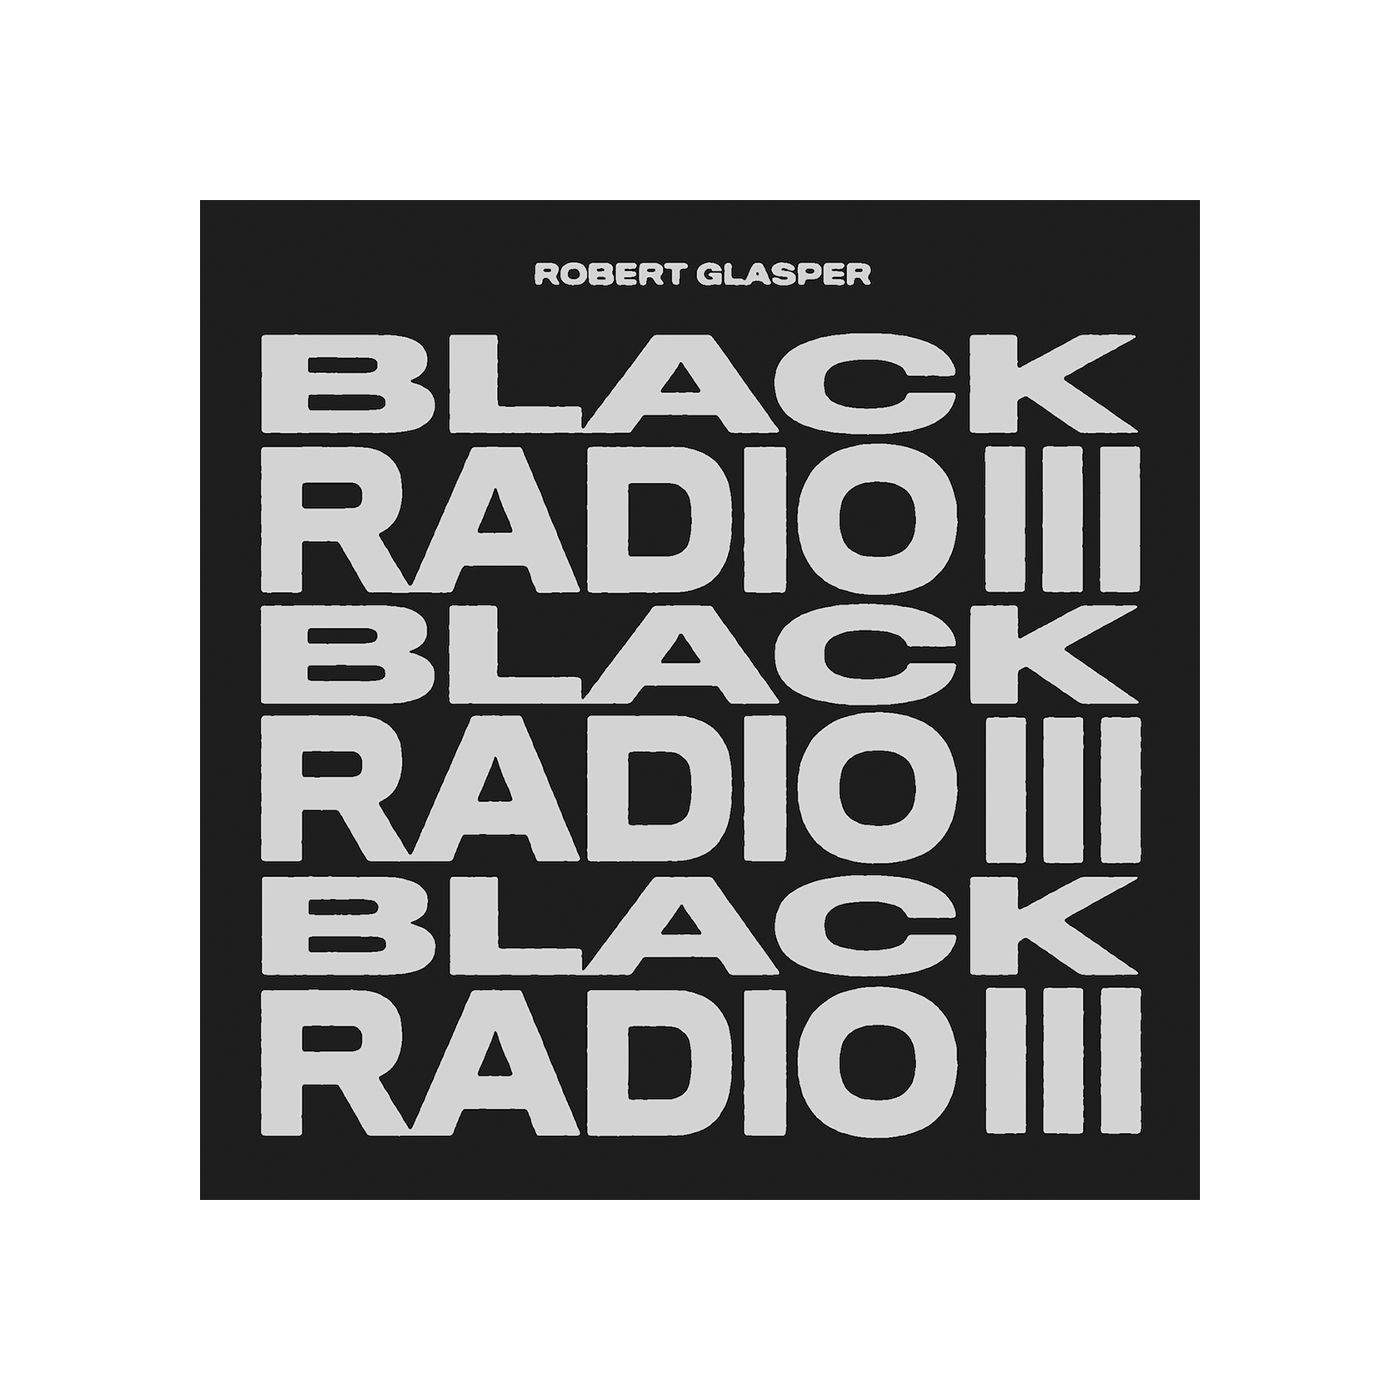 Black Radio III Digital Album